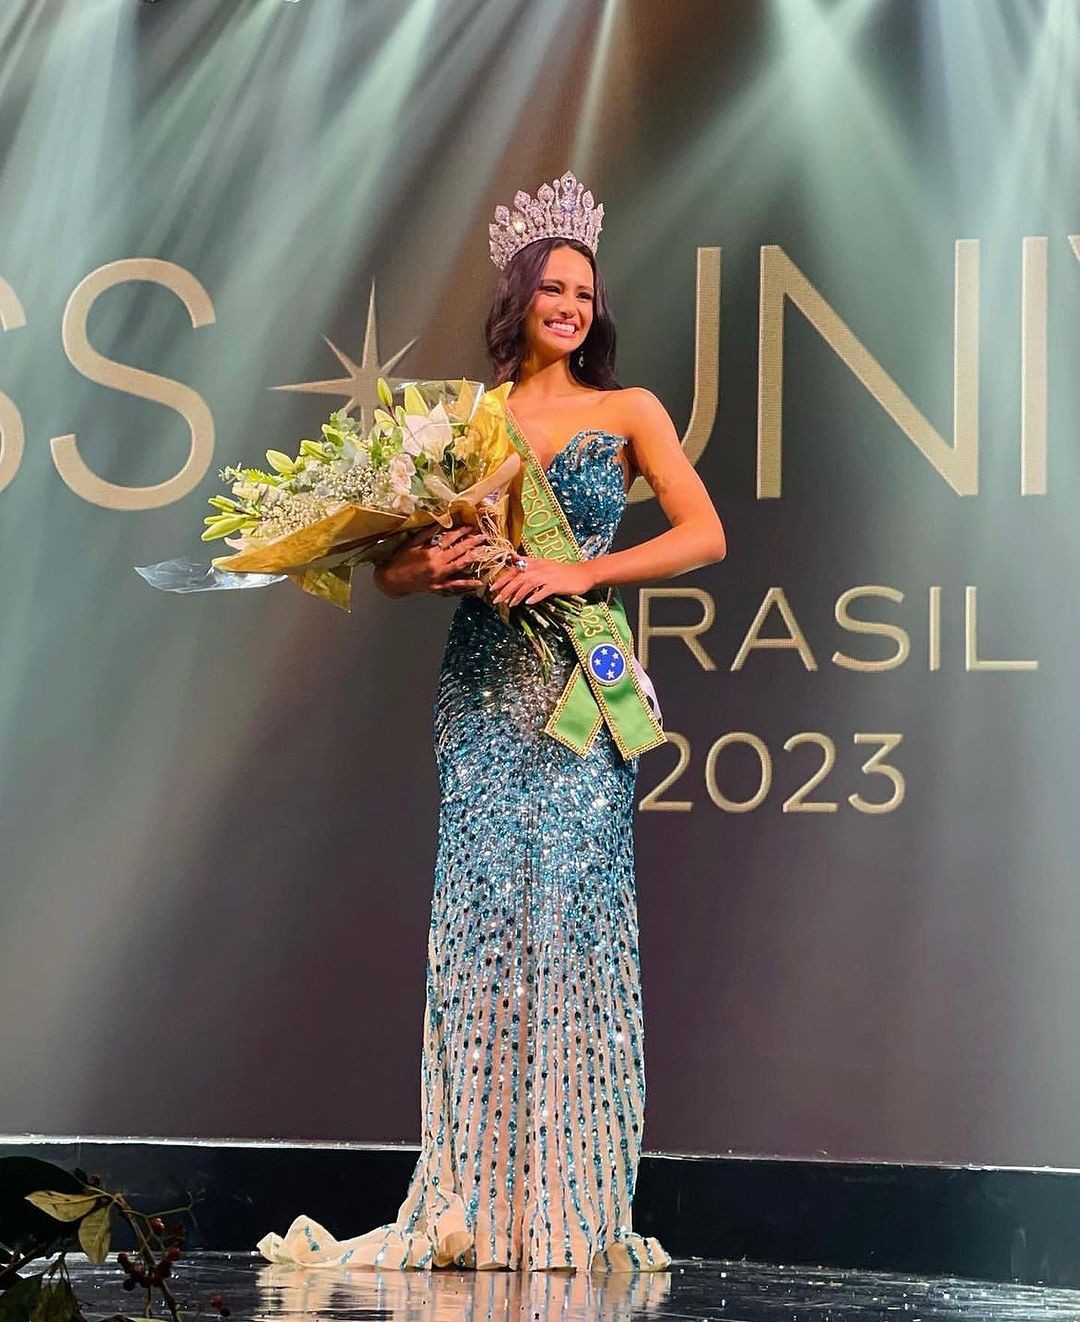 Nhan sắc cô gái 19 tuổi đăng quang Hoa hậu Hoàn vũ Brazil ảnh 3